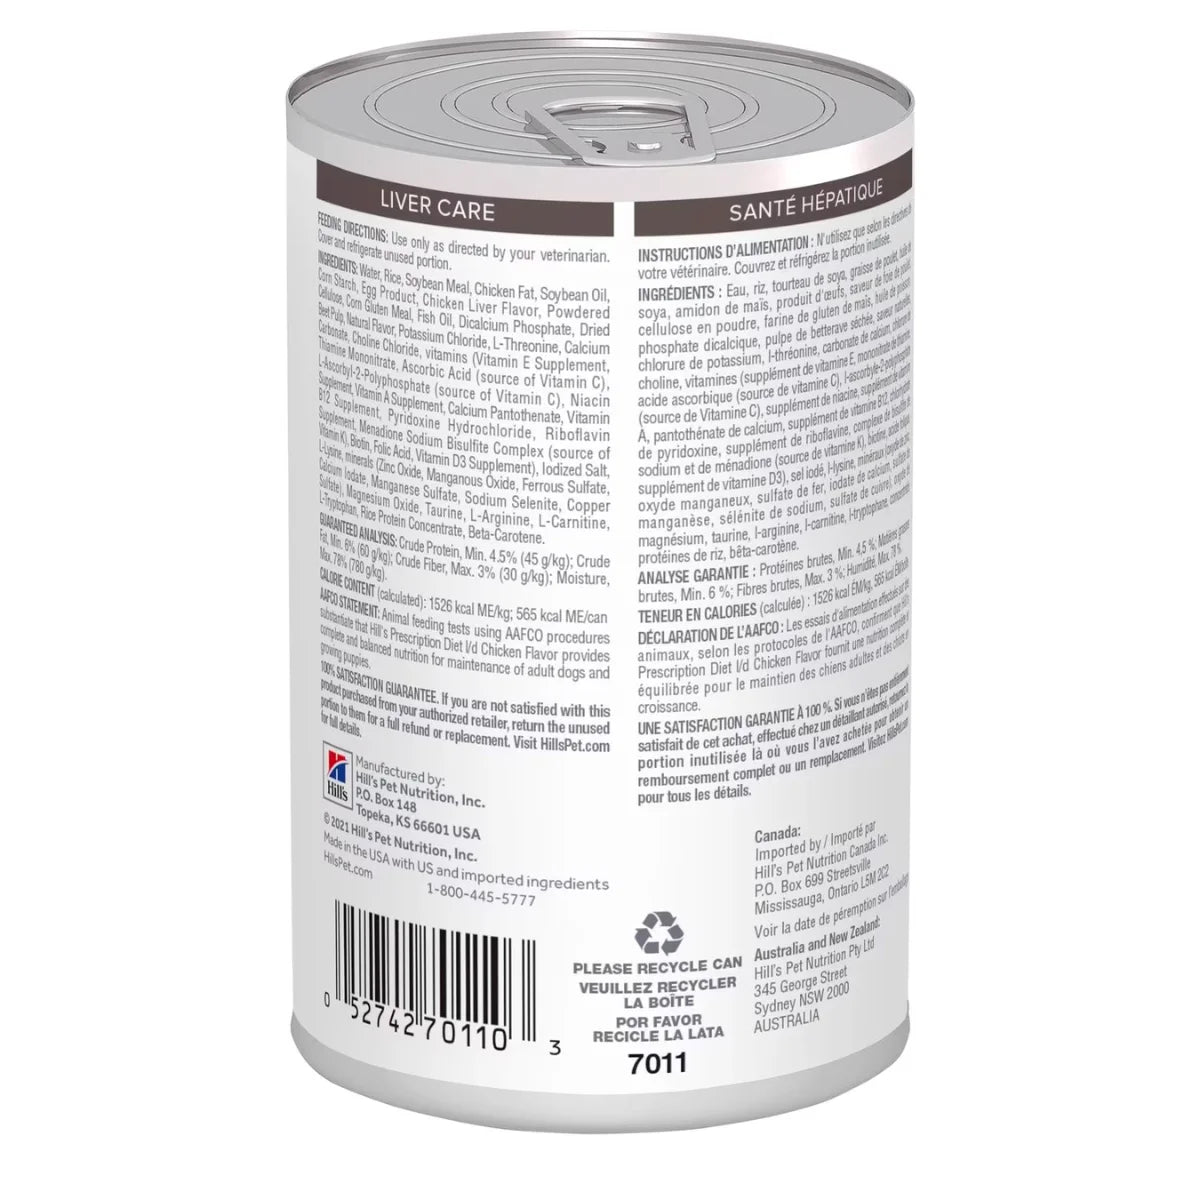 Hill's l/d Liver Care Canned Prescription Dog Food - Vetopia